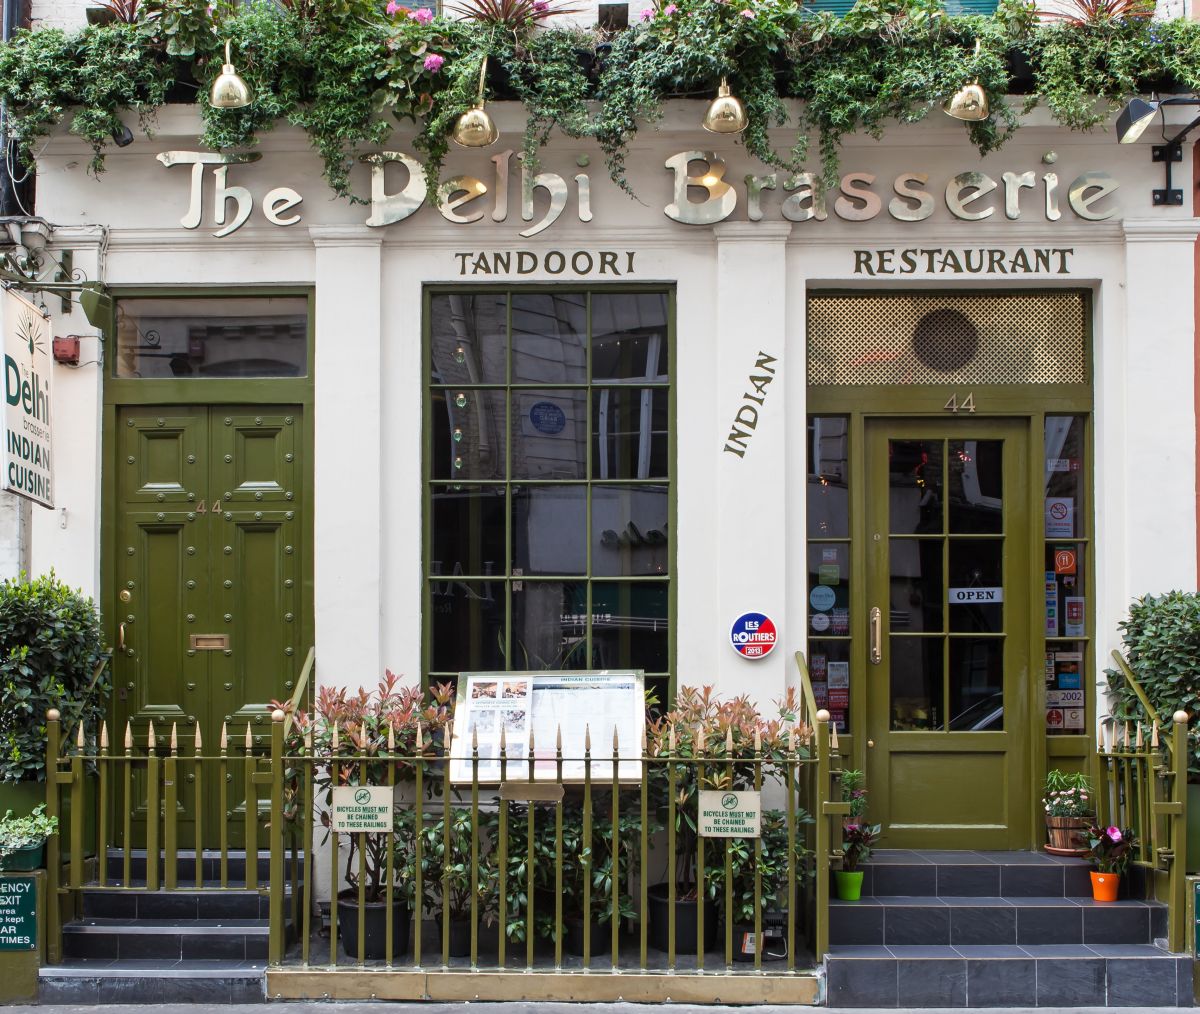 deformation resterende Modtager Top 5 Halal Restaurants in London | Delhibrasserie